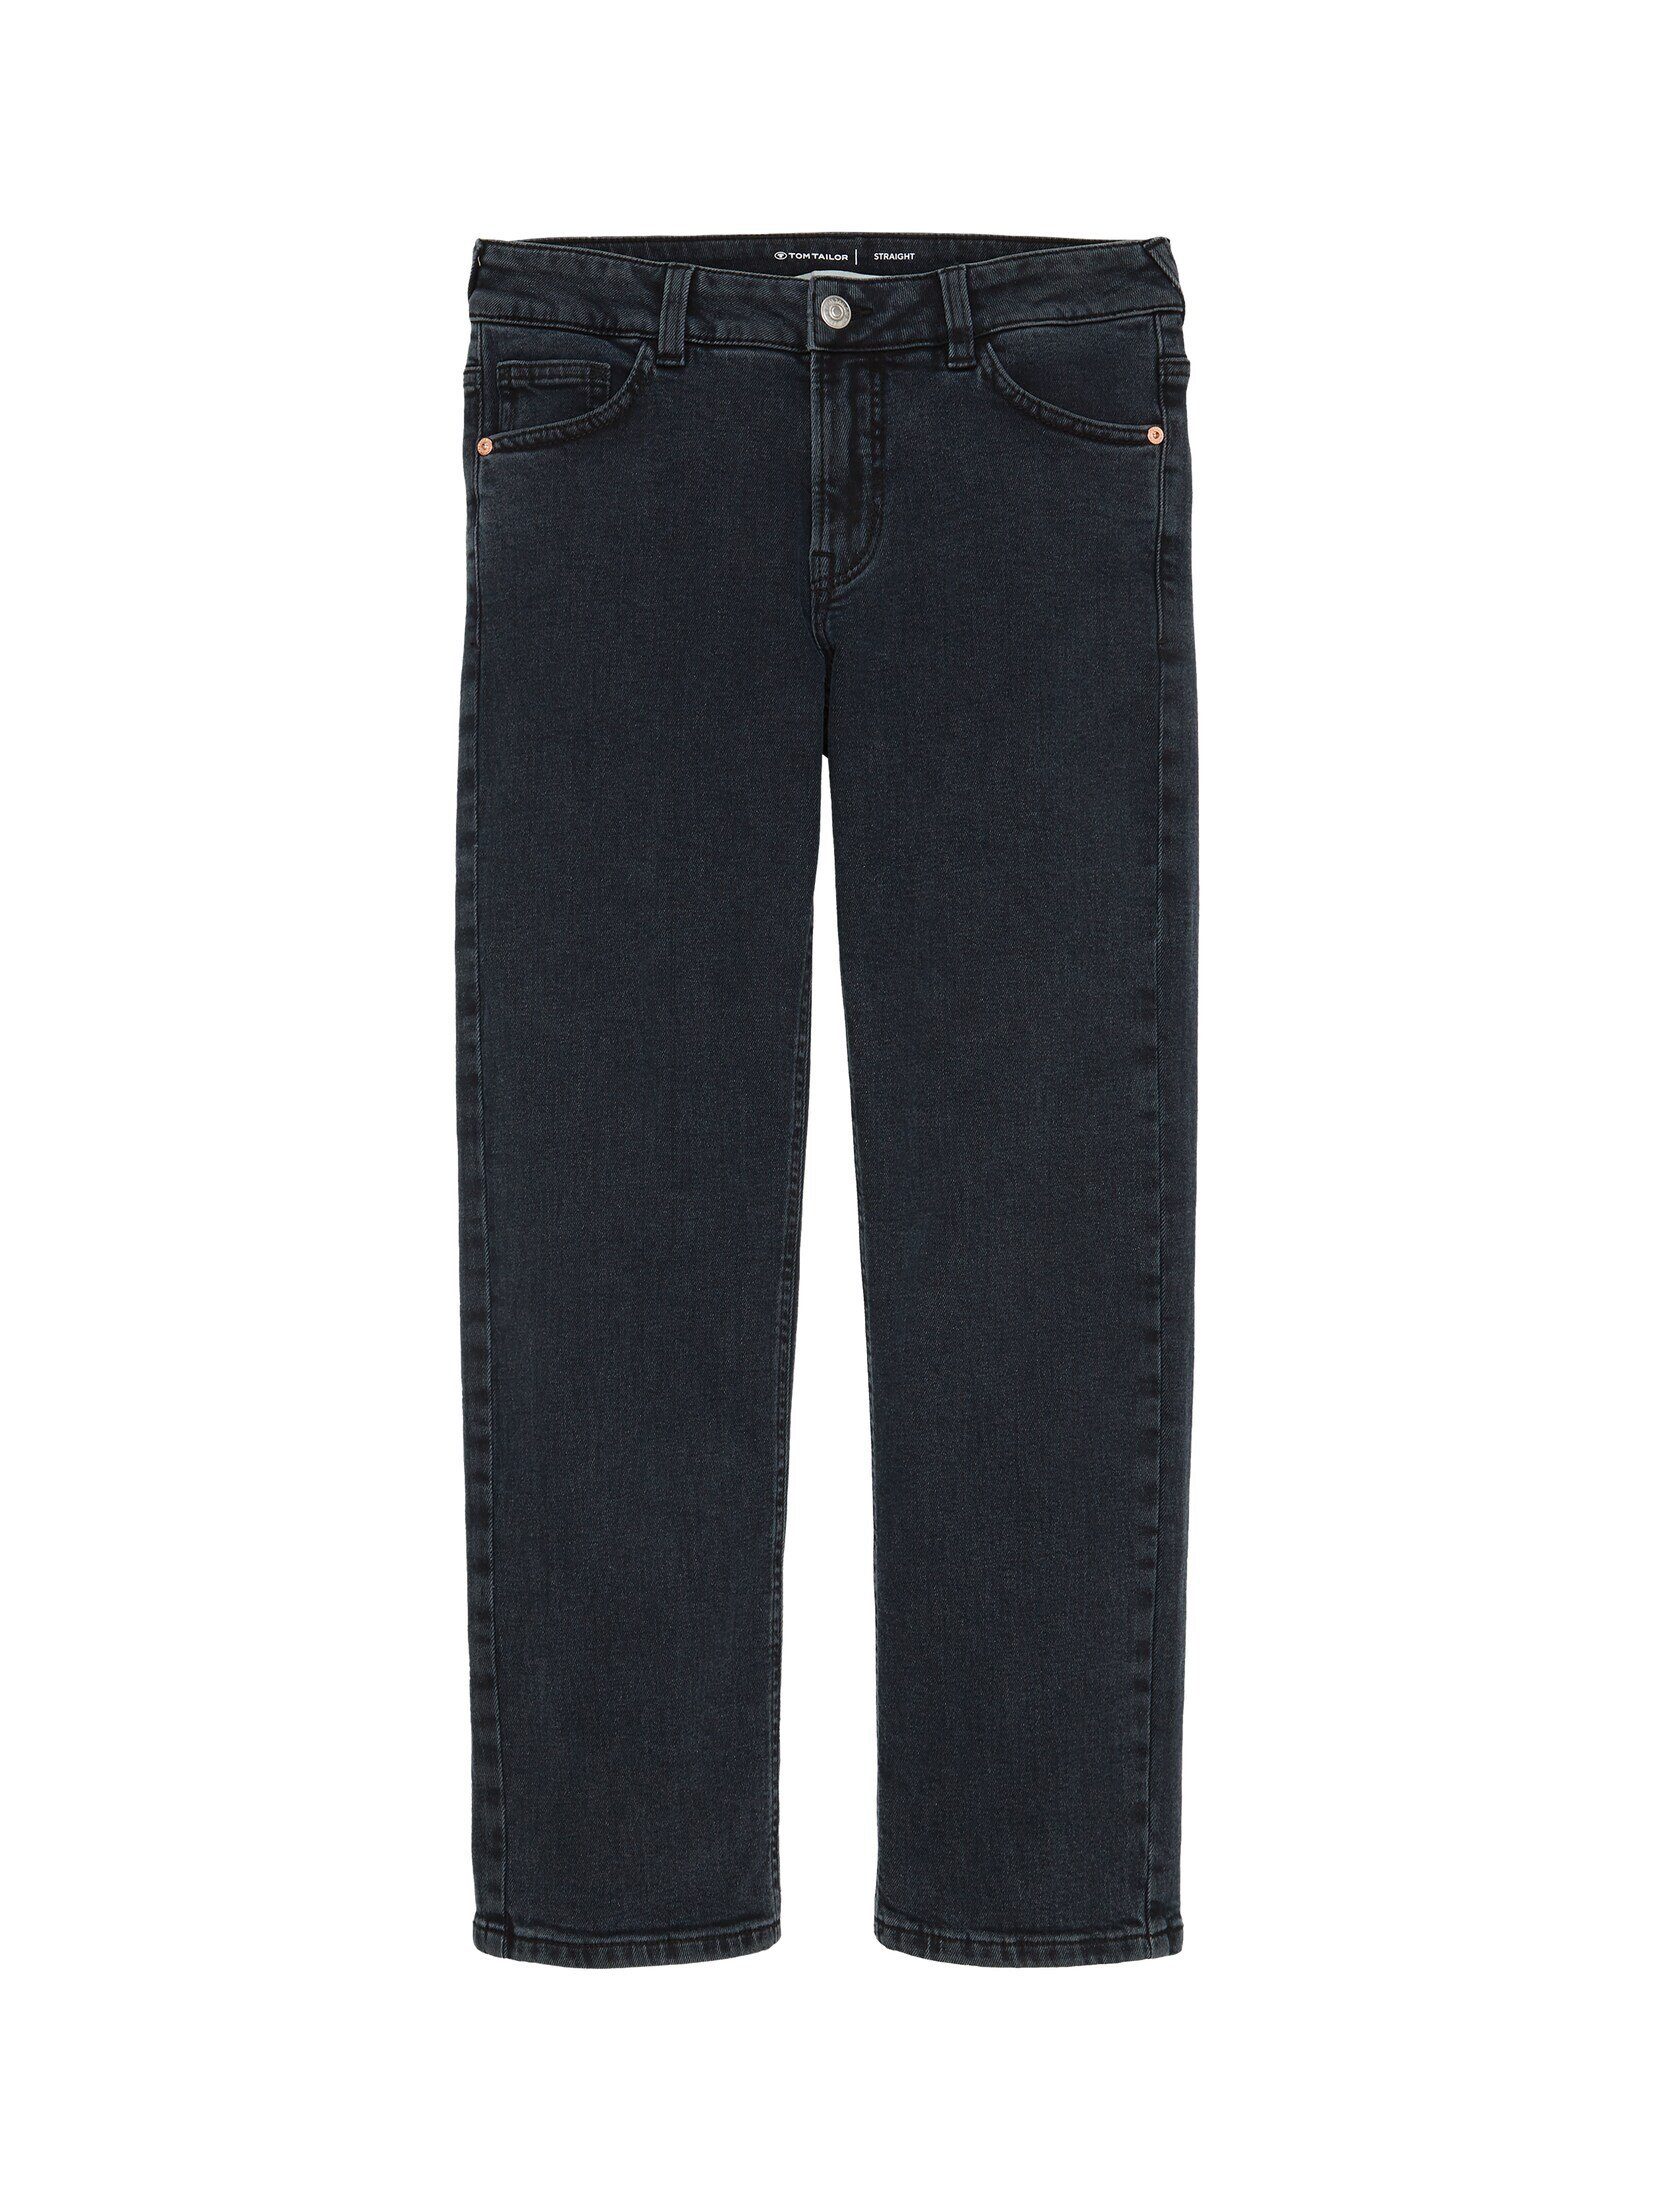 TOM TAILOR Gerade Jeans Straight Jeans mit Bio-Baumwolle blue black denim